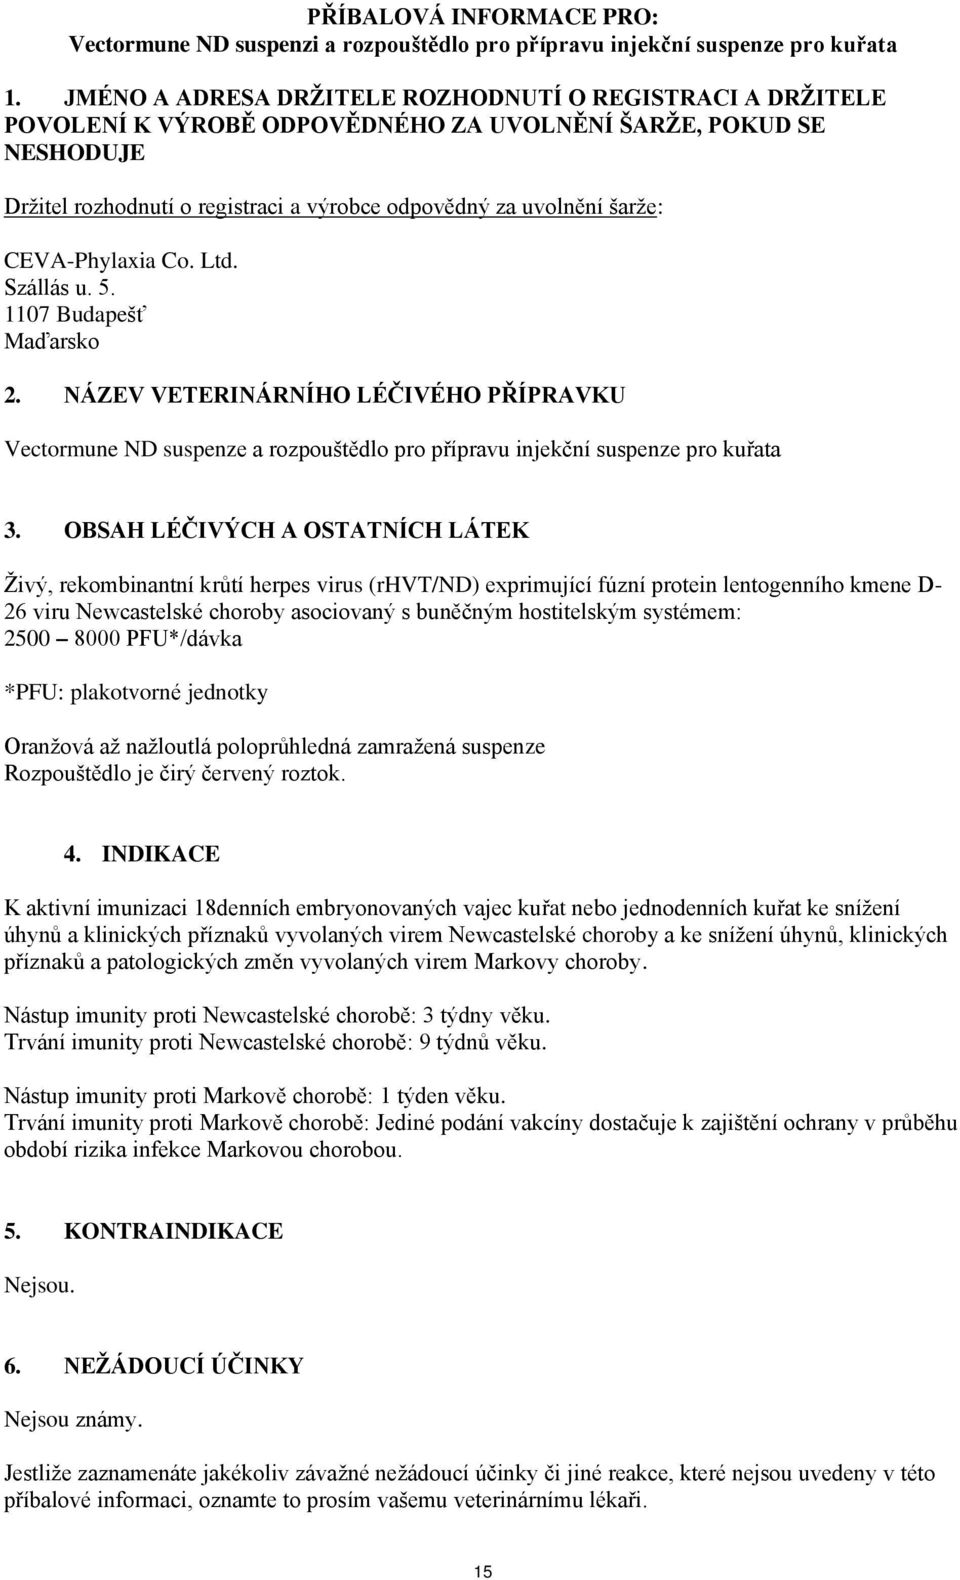 CEVA-Phylaxia Co. Ltd. Szállás u. 5. 1107 Budapešť Maďarsko 2. NÁZEV VETERINÁRNÍHO LÉČIVÉHO PŘÍPRAVKU Vectormune ND suspenze a rozpouštědlo pro přípravu injekční suspenze pro kuřata 3.